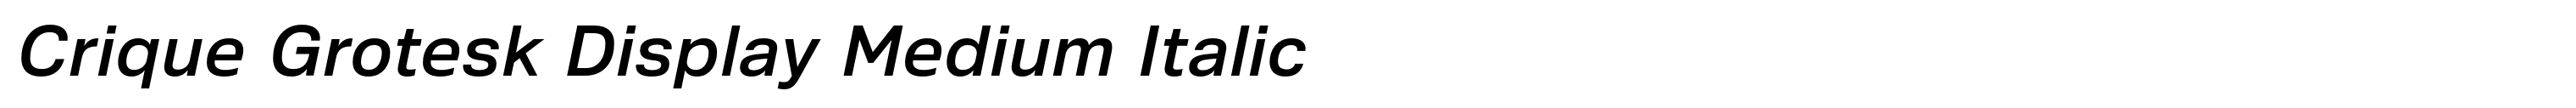 Crique Grotesk Display Medium Italic